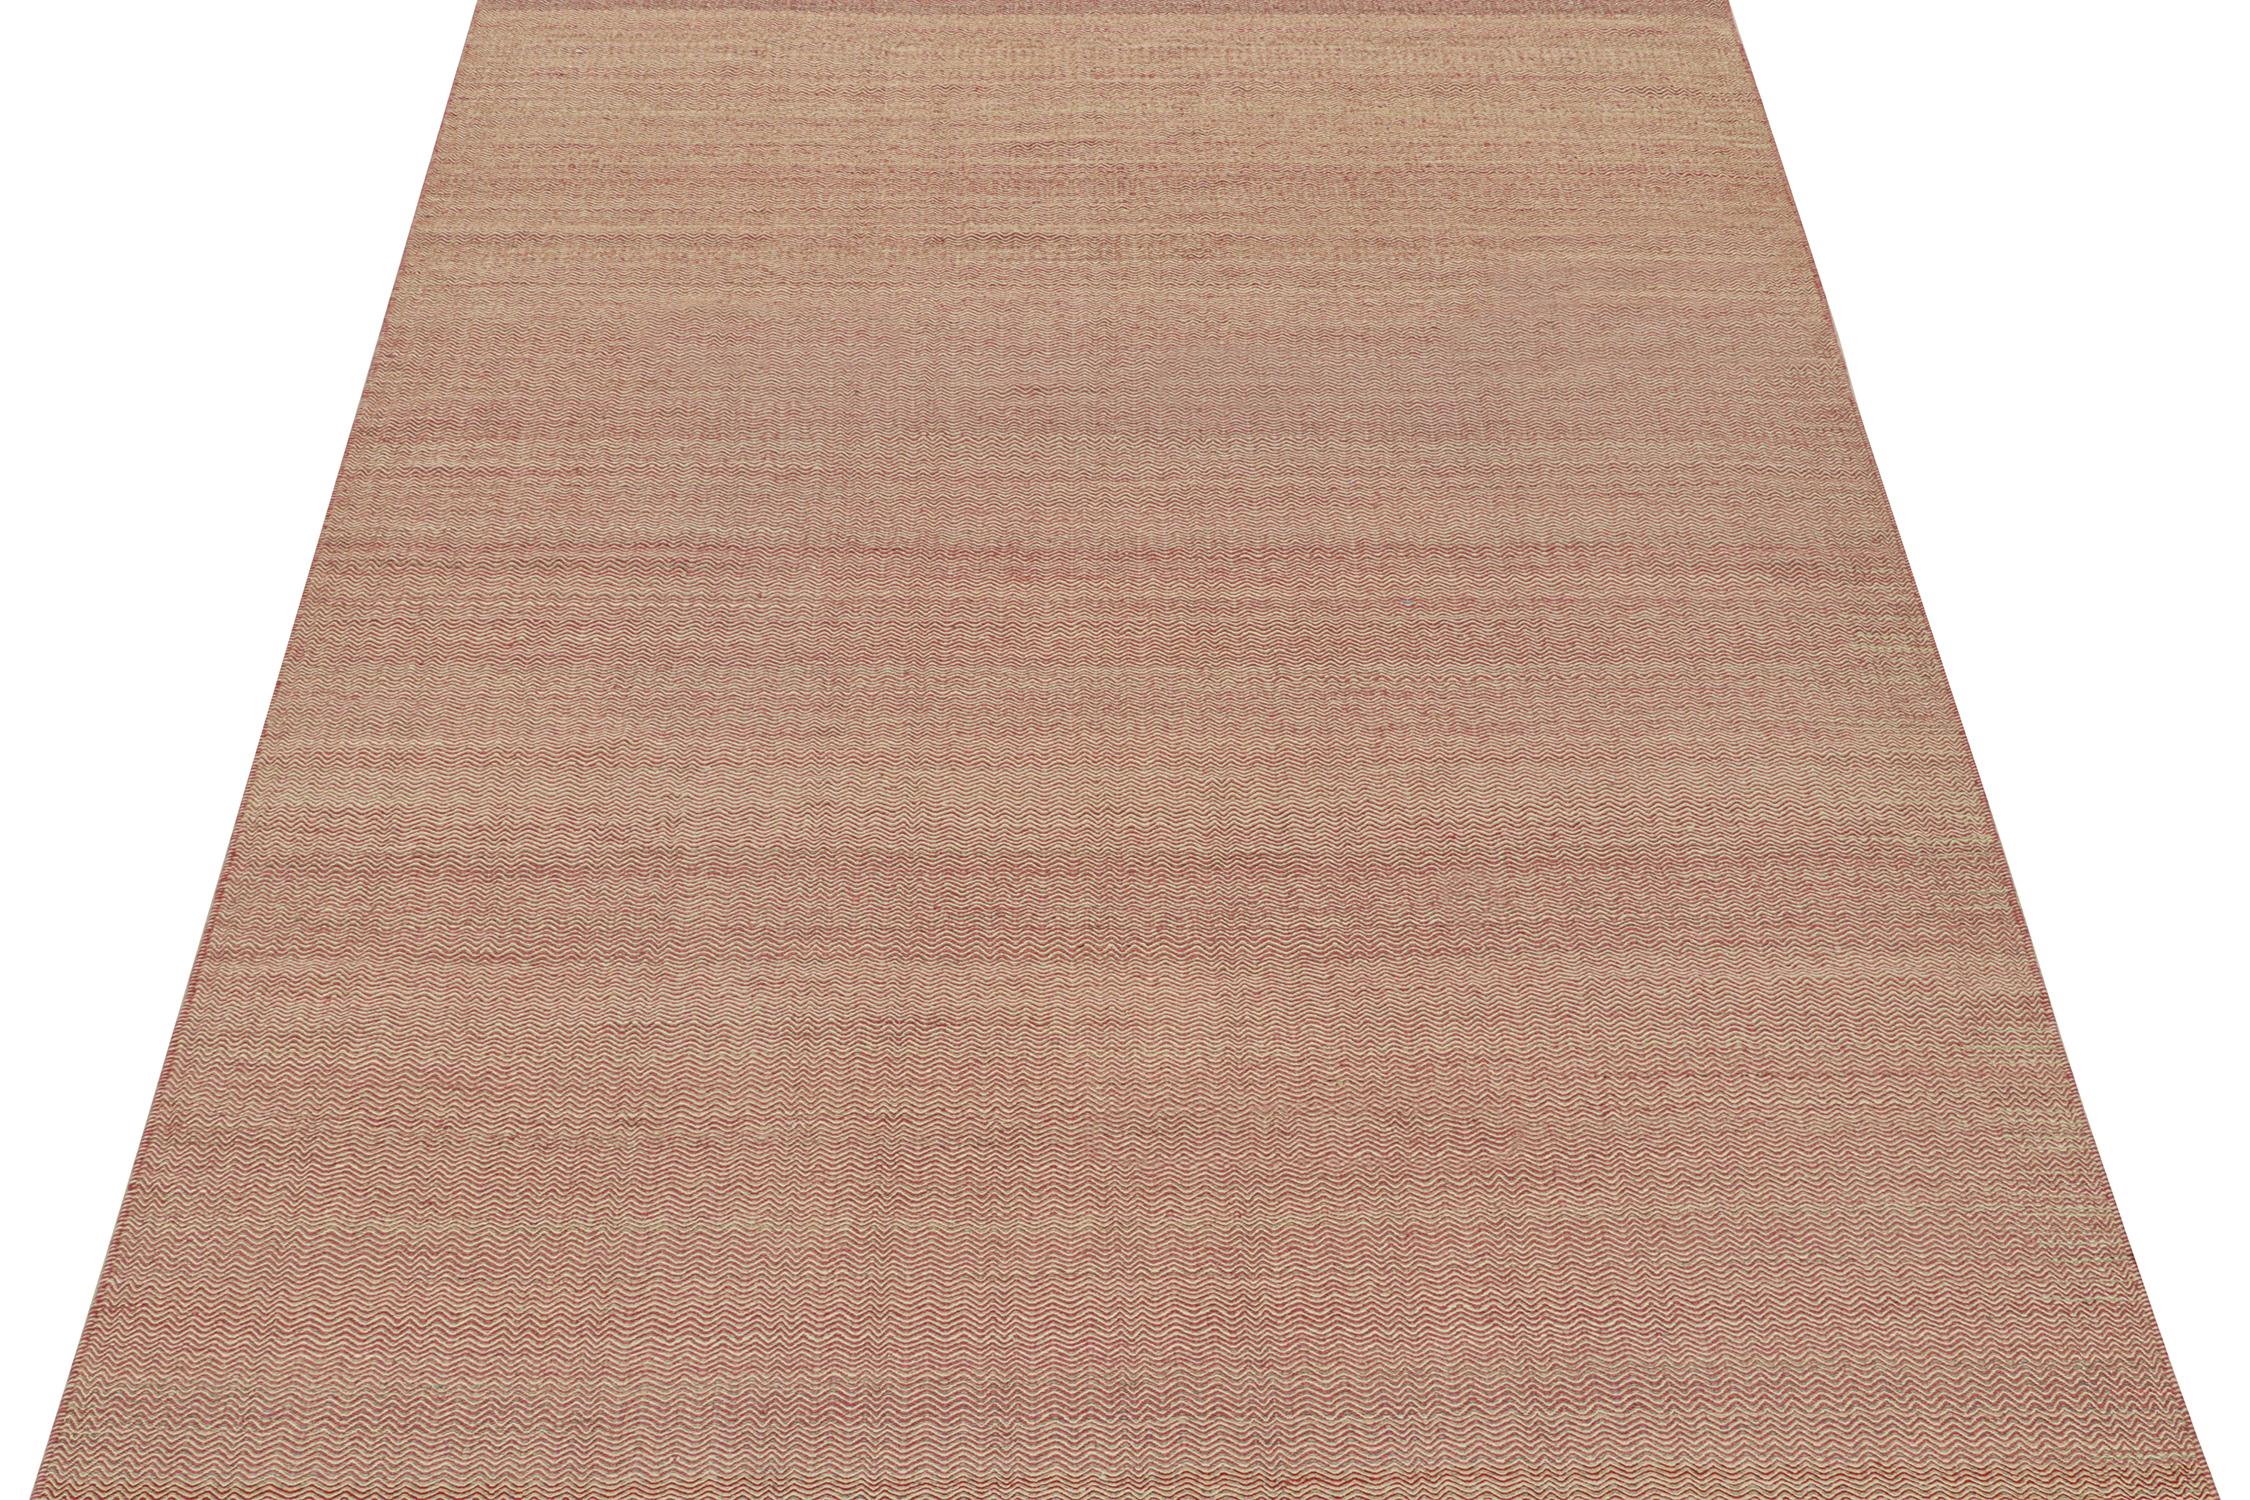 Tissé à la main en laine, ce kilim 8x11 est issu d'une nouvelle ligne de tissages plats contemporains de Rug & Kilim.

Sa construction fait appel à une technique de tissage à la main qui associe des couleurs complémentaires dans une fine série de